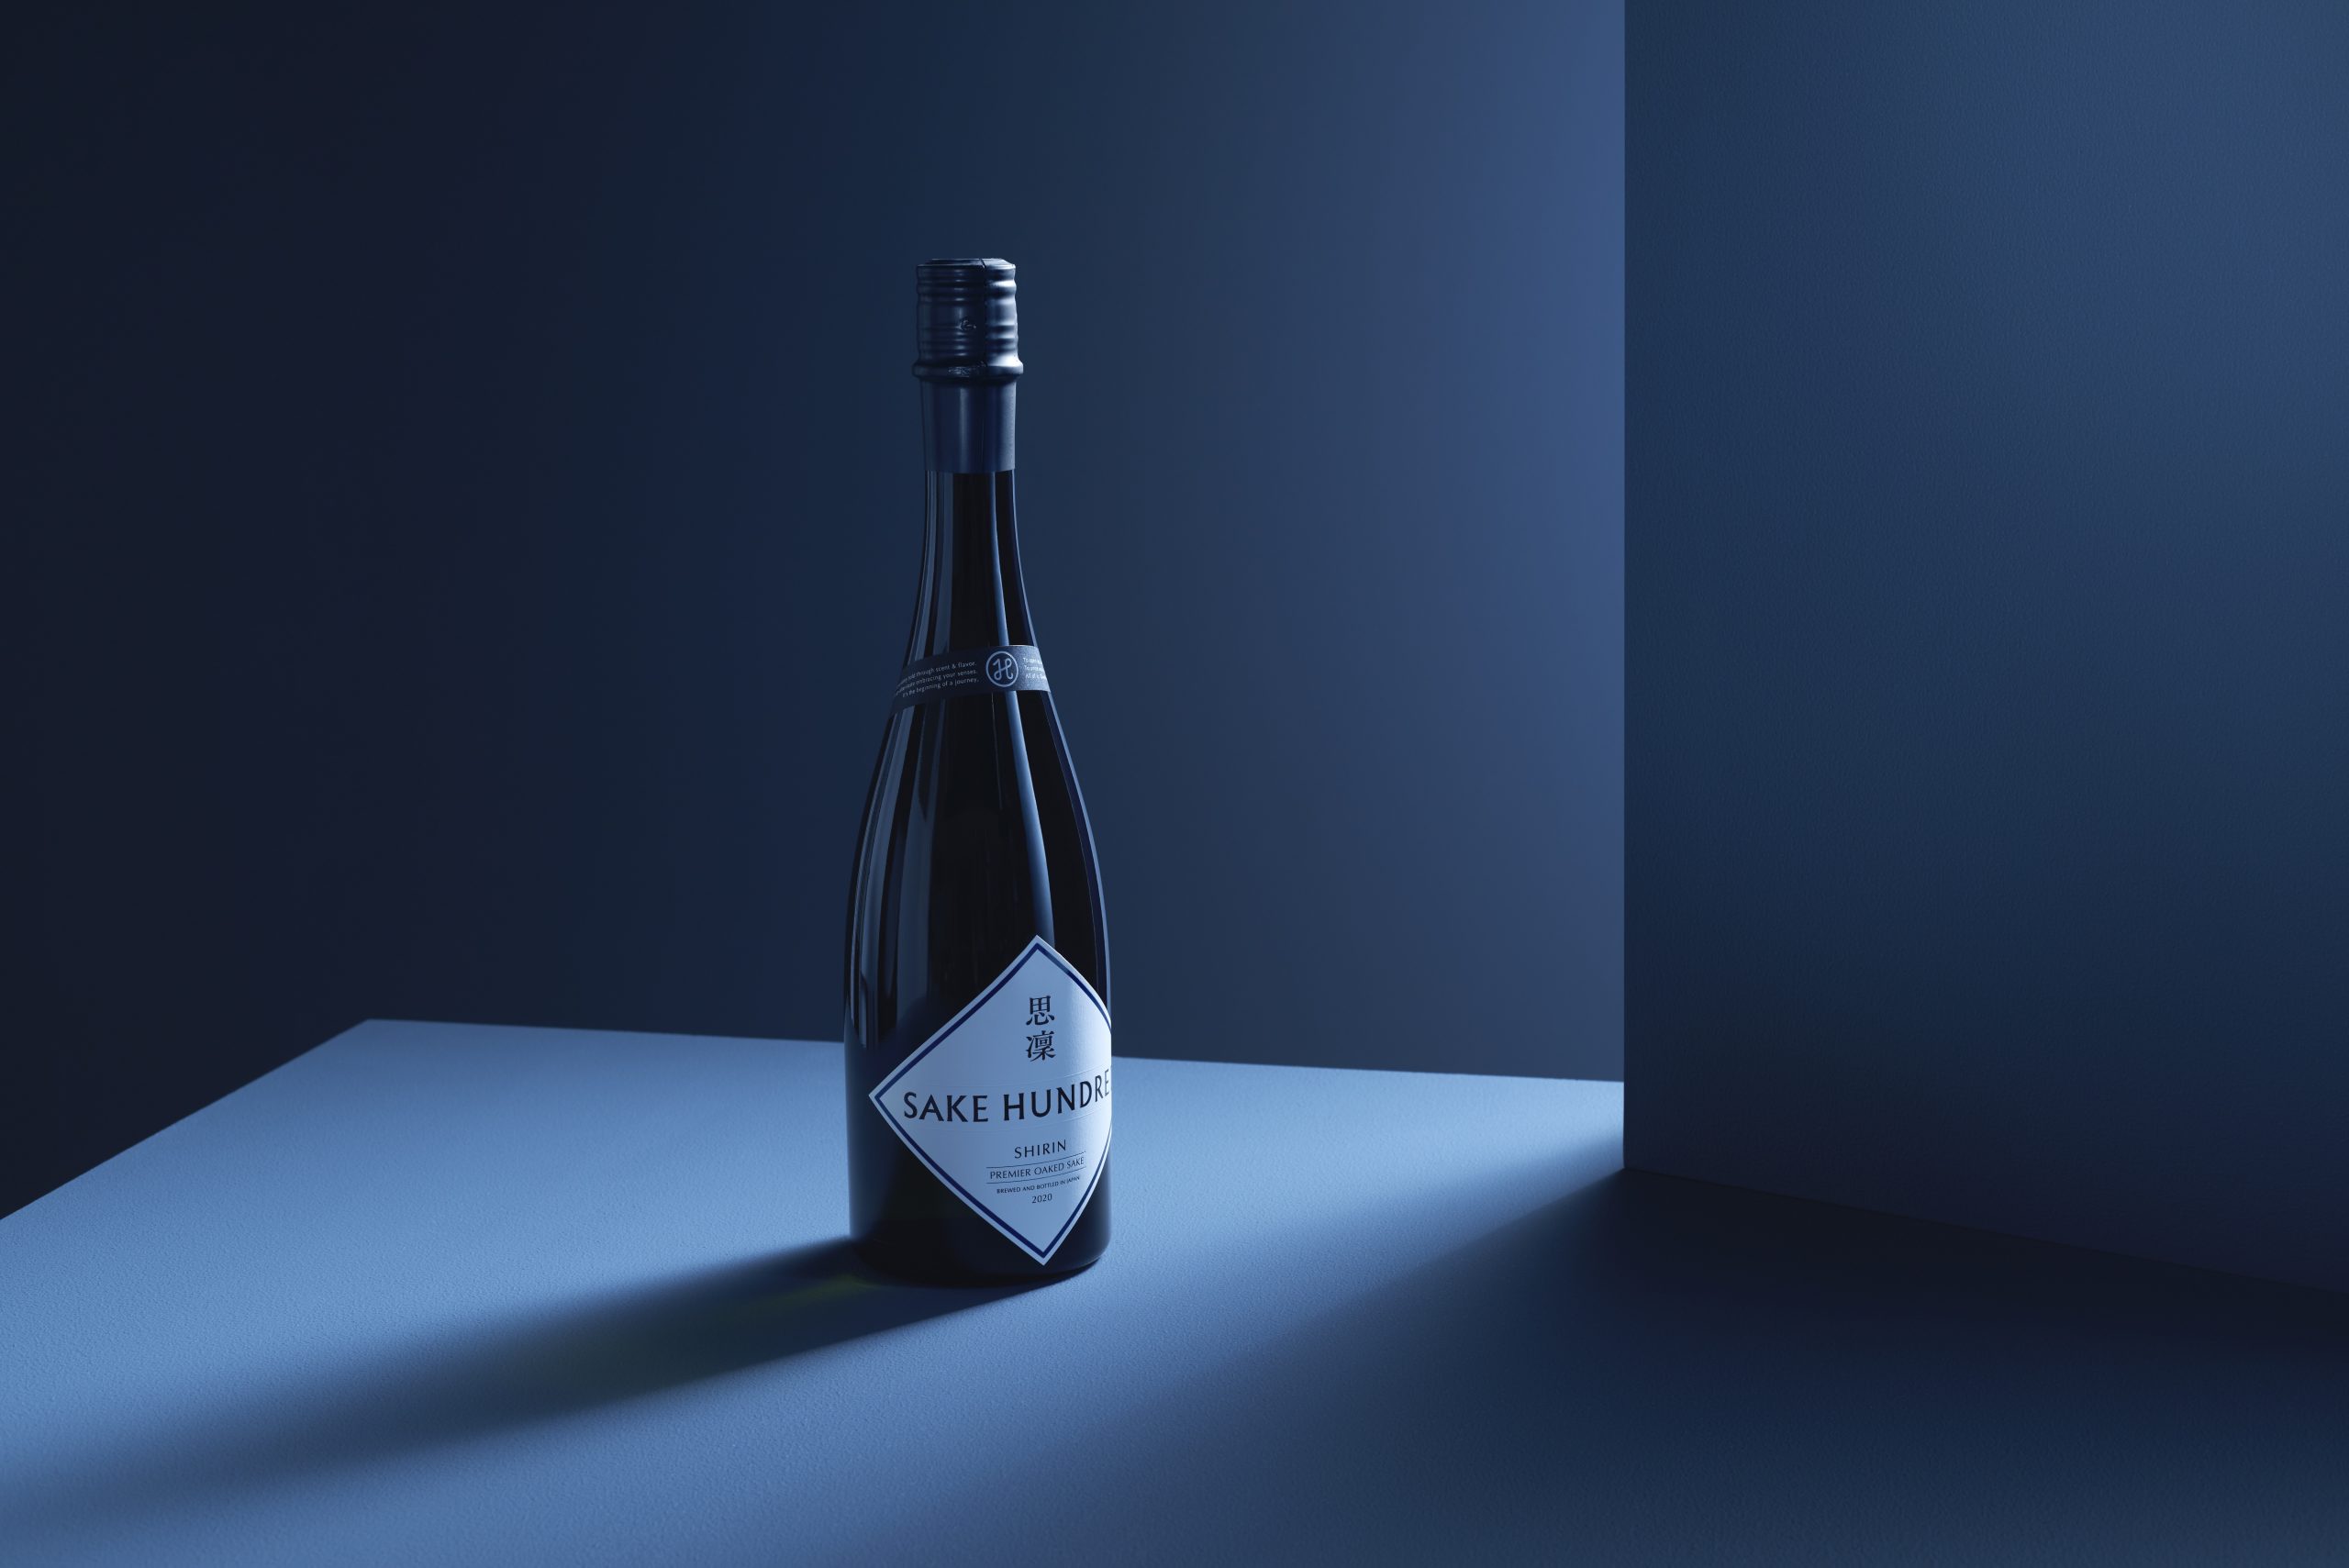 日本酒ブランド「SAKE HUNDRED」が、『百光 別誂』の予約受付開始 